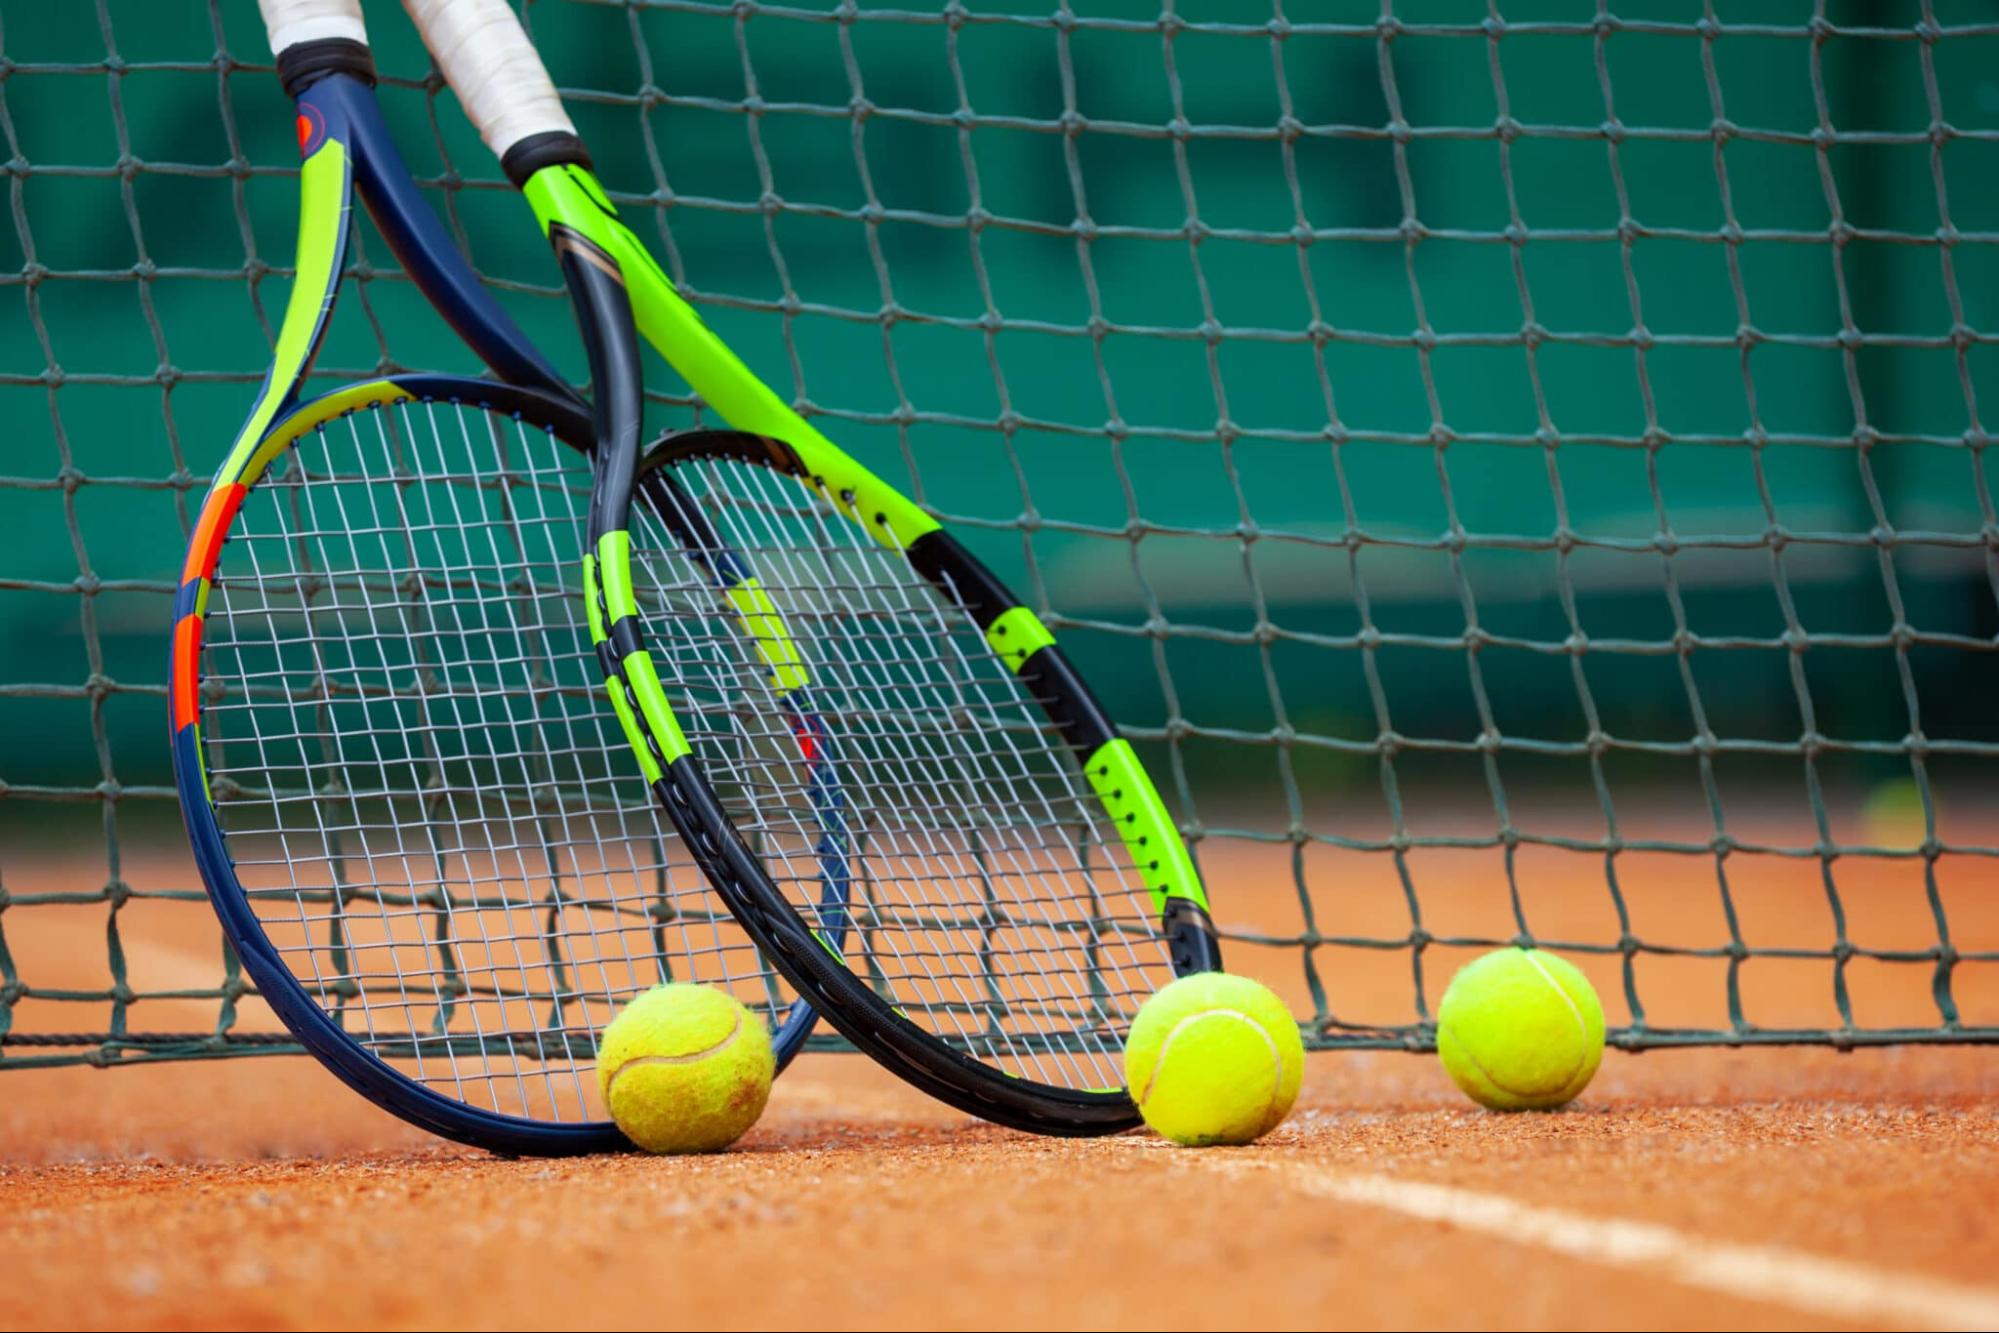 Người bệnh cần tránh những môn thể thao mạnh như tennis